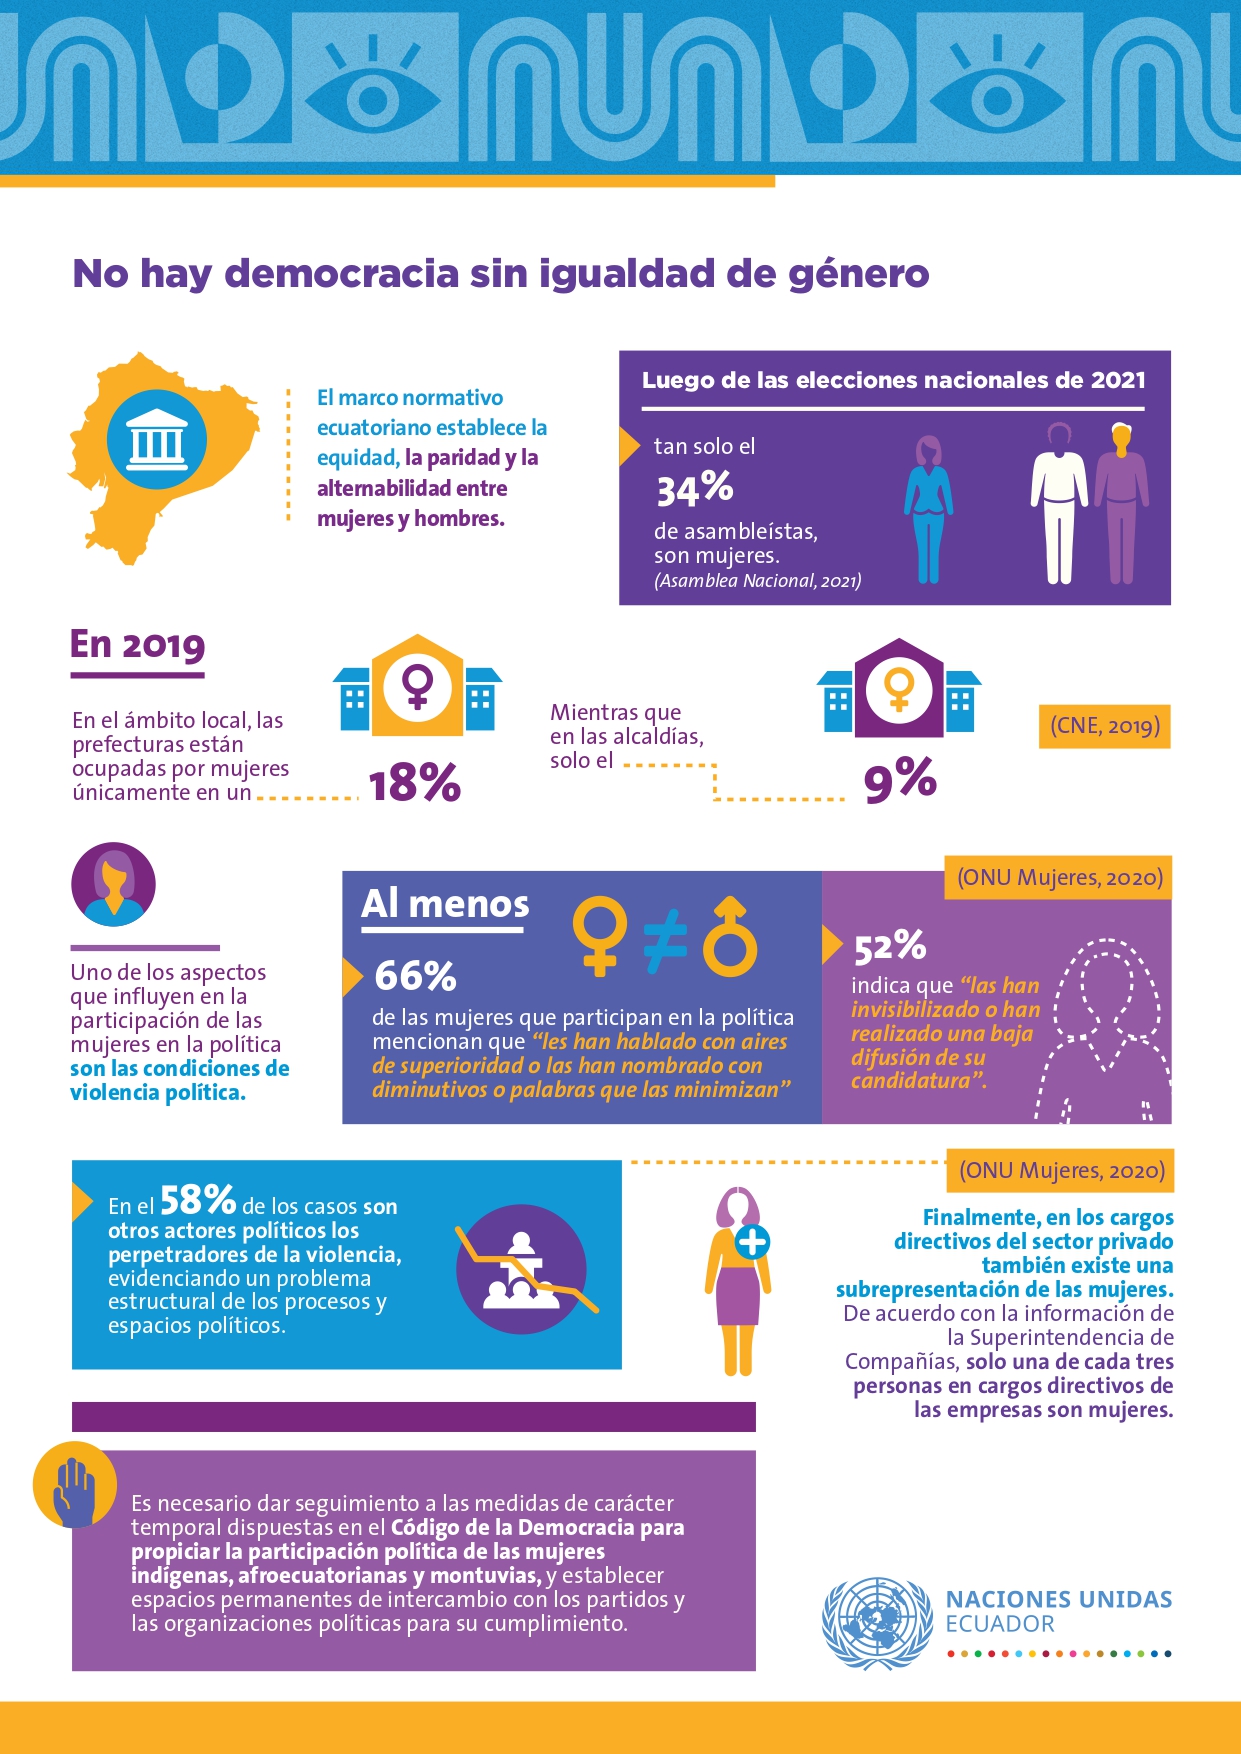 Fact sheet No hay democracia sin igualdad de género (PPIG Ecuador)